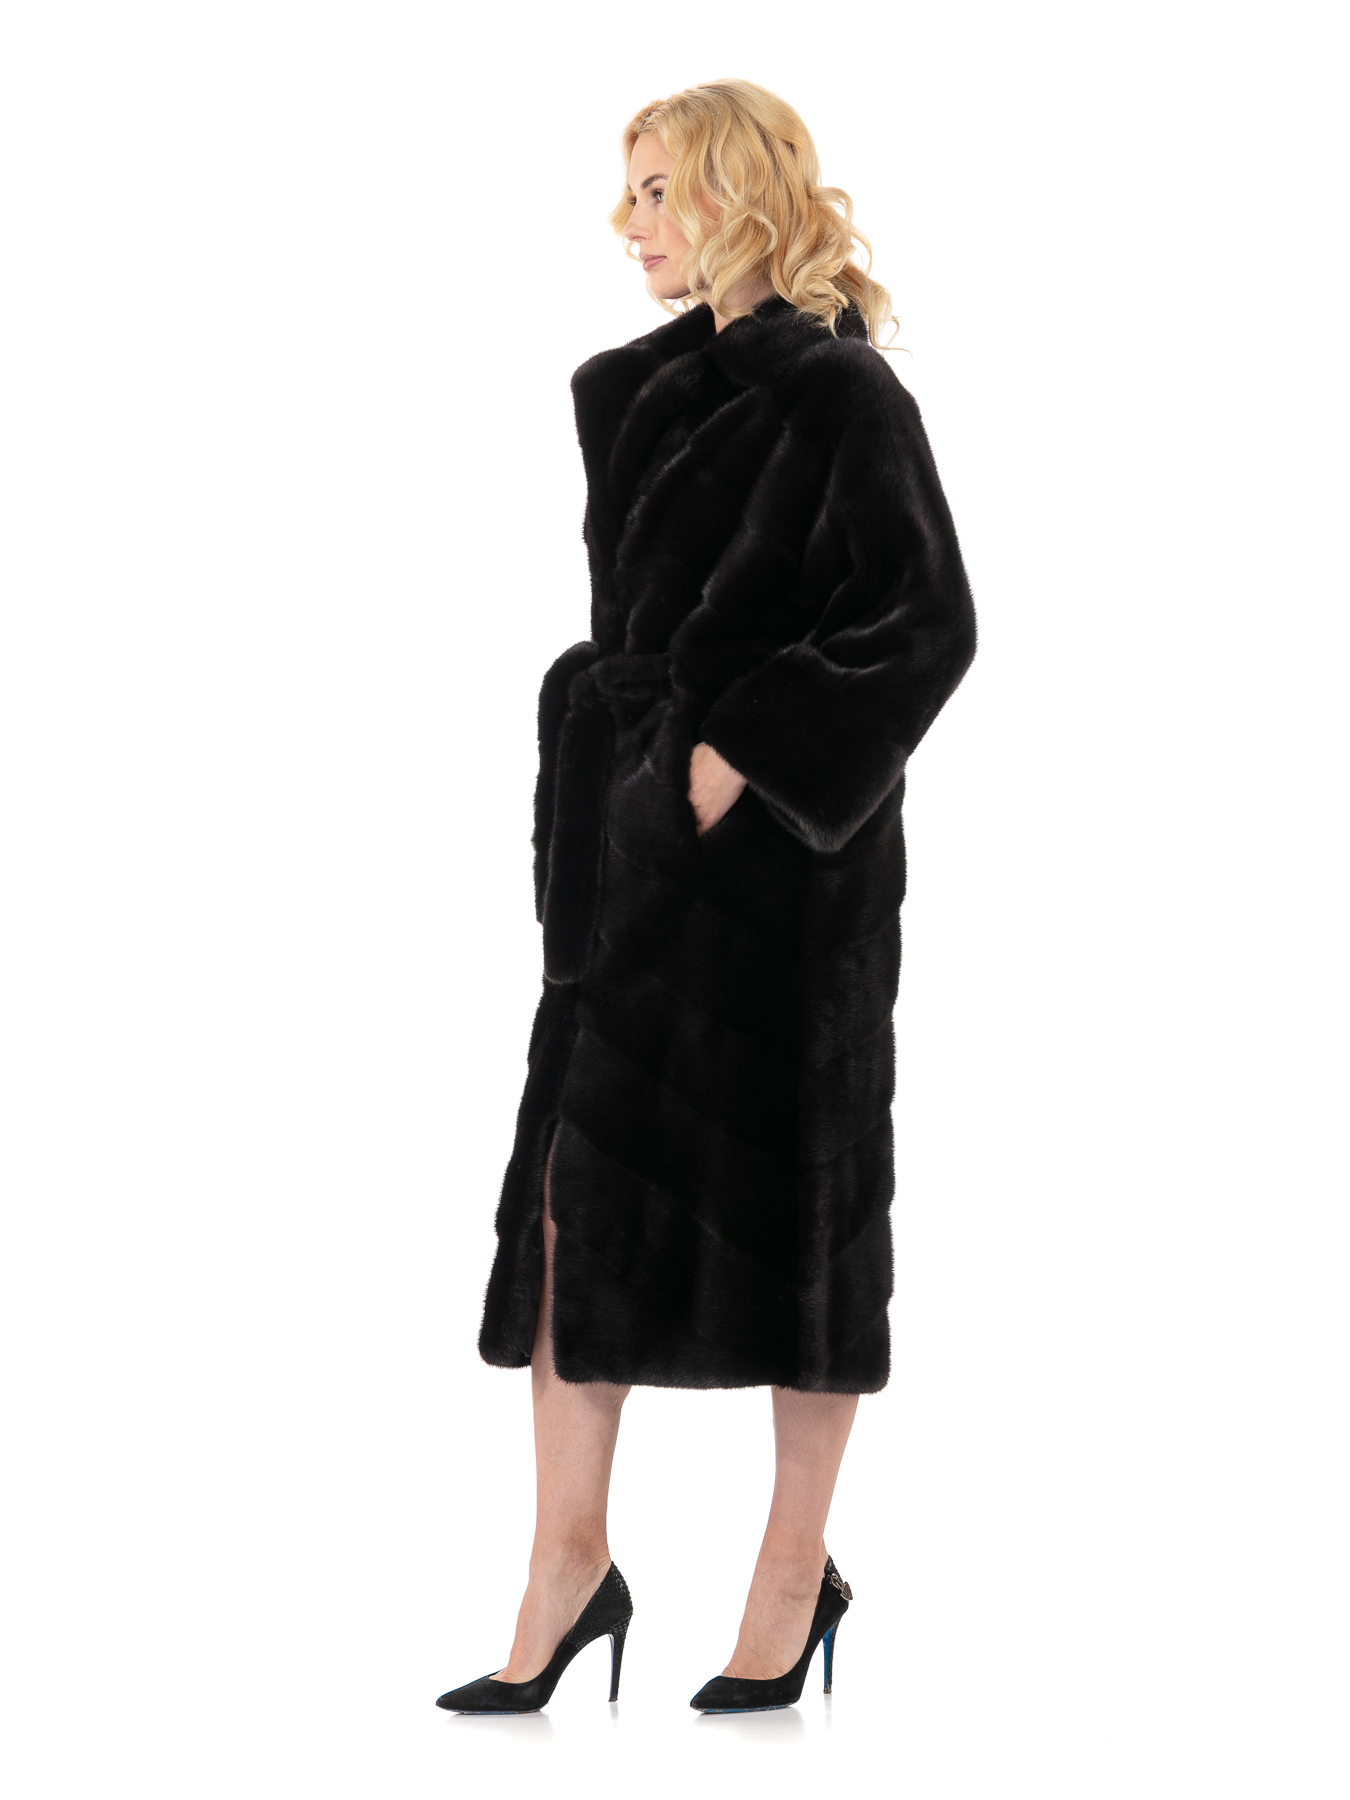 Женское пальто из меха норки с английским воротником